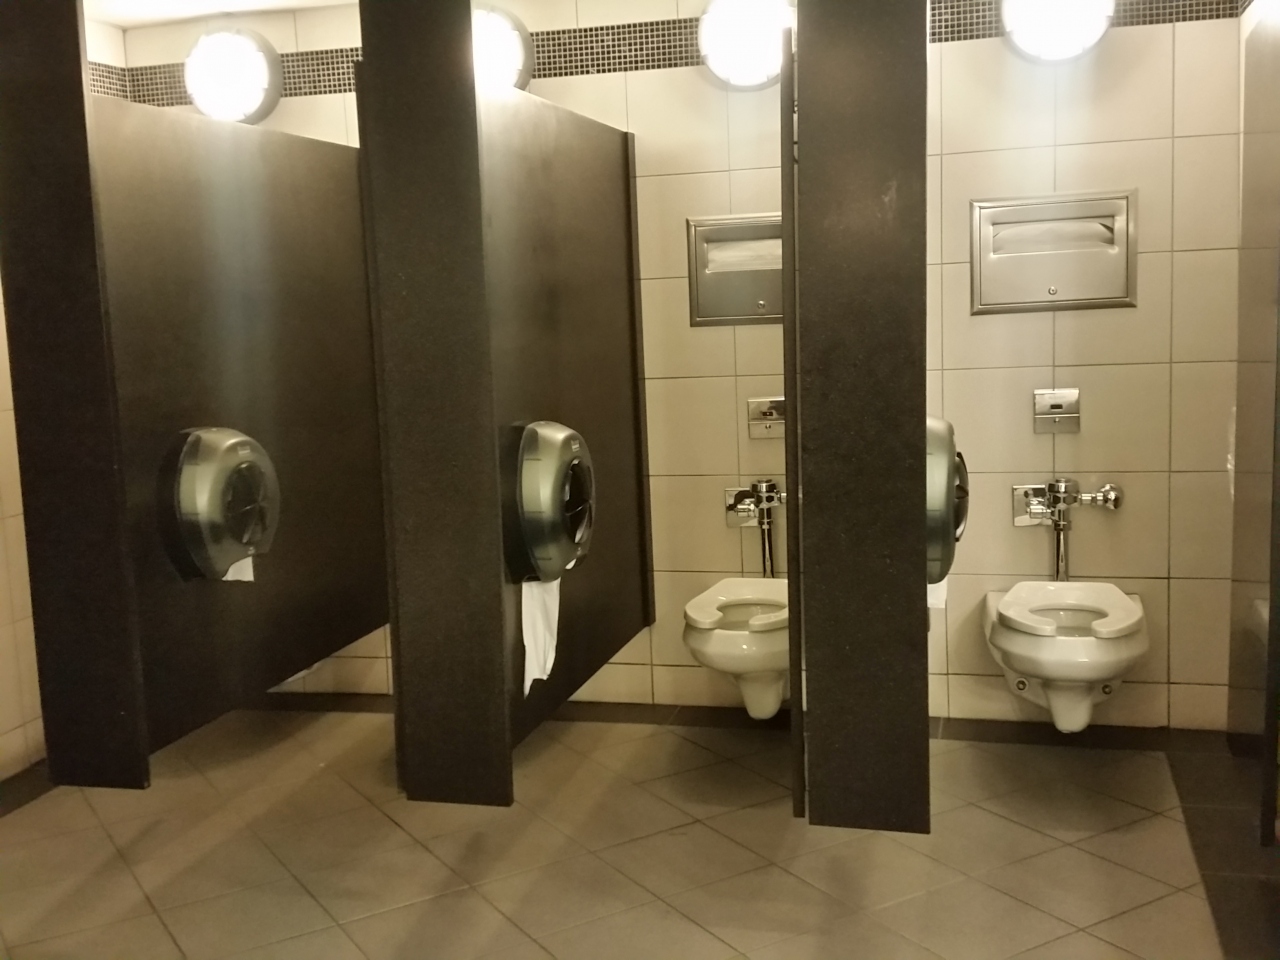 ニューヨーク トイレ (ニューヨーク州,アメリカ) 旅行のクチコミサイト フォートラベル